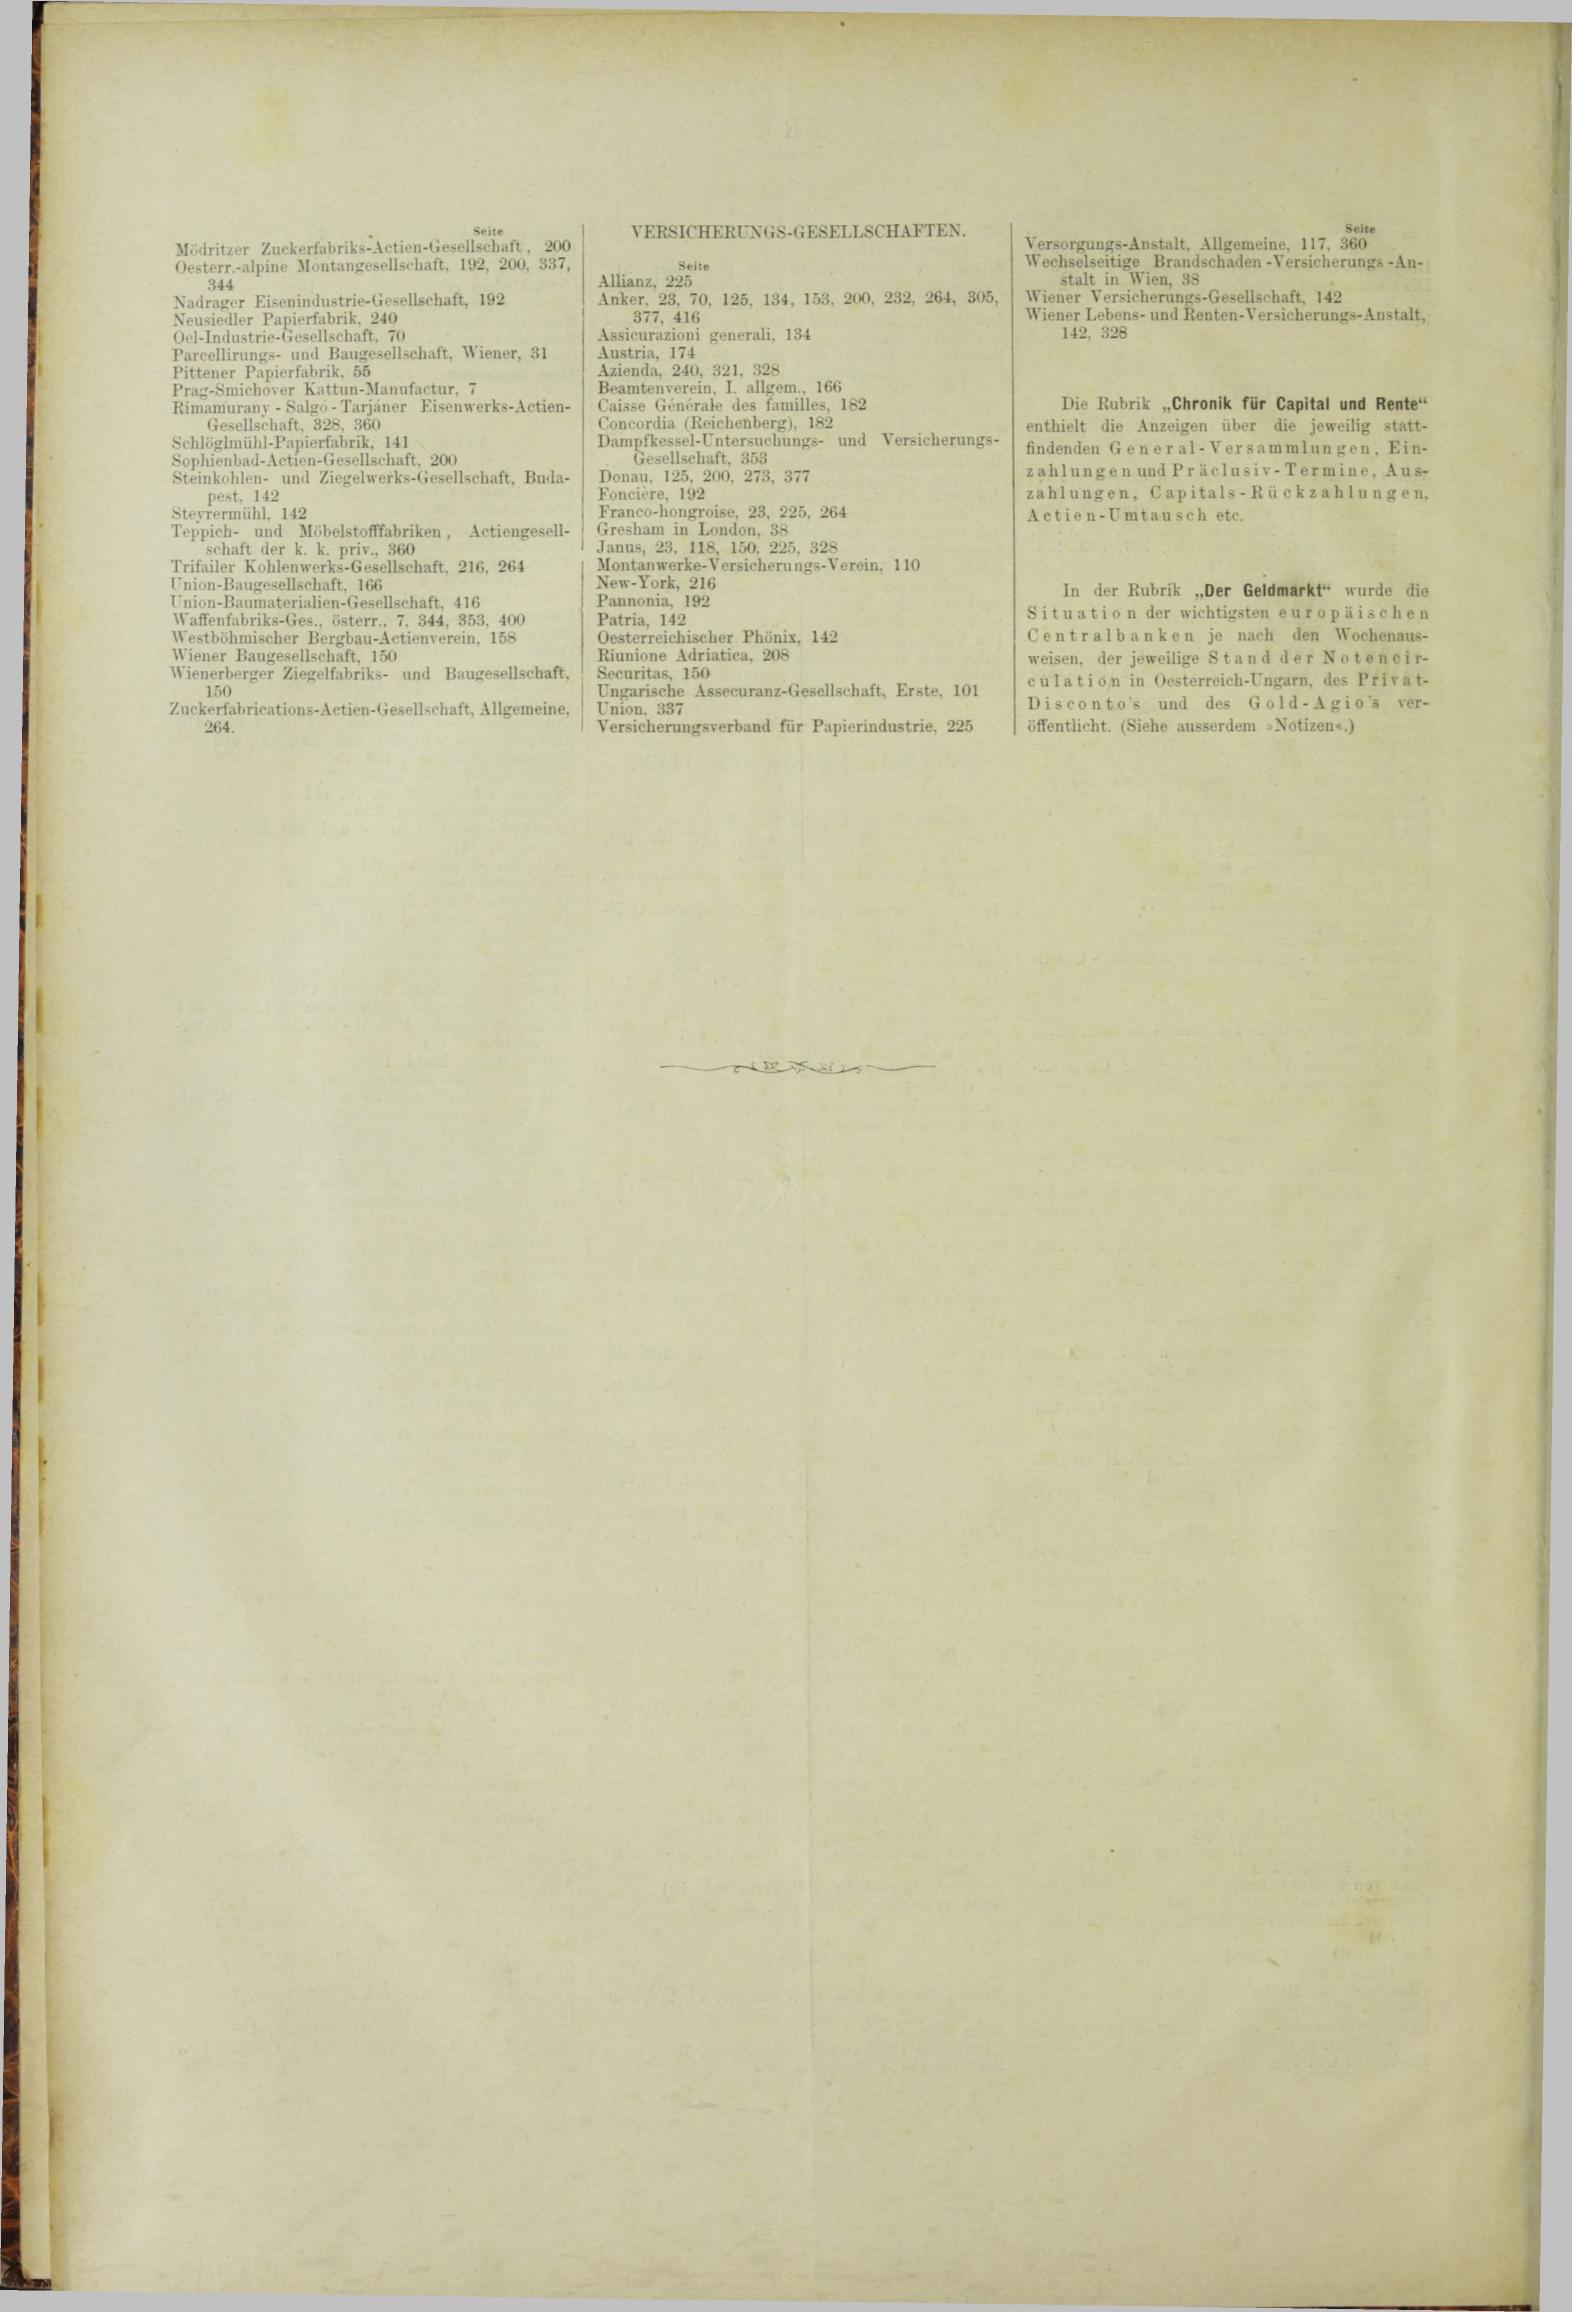 Der Tresor 08.03.1883 - Seite 12